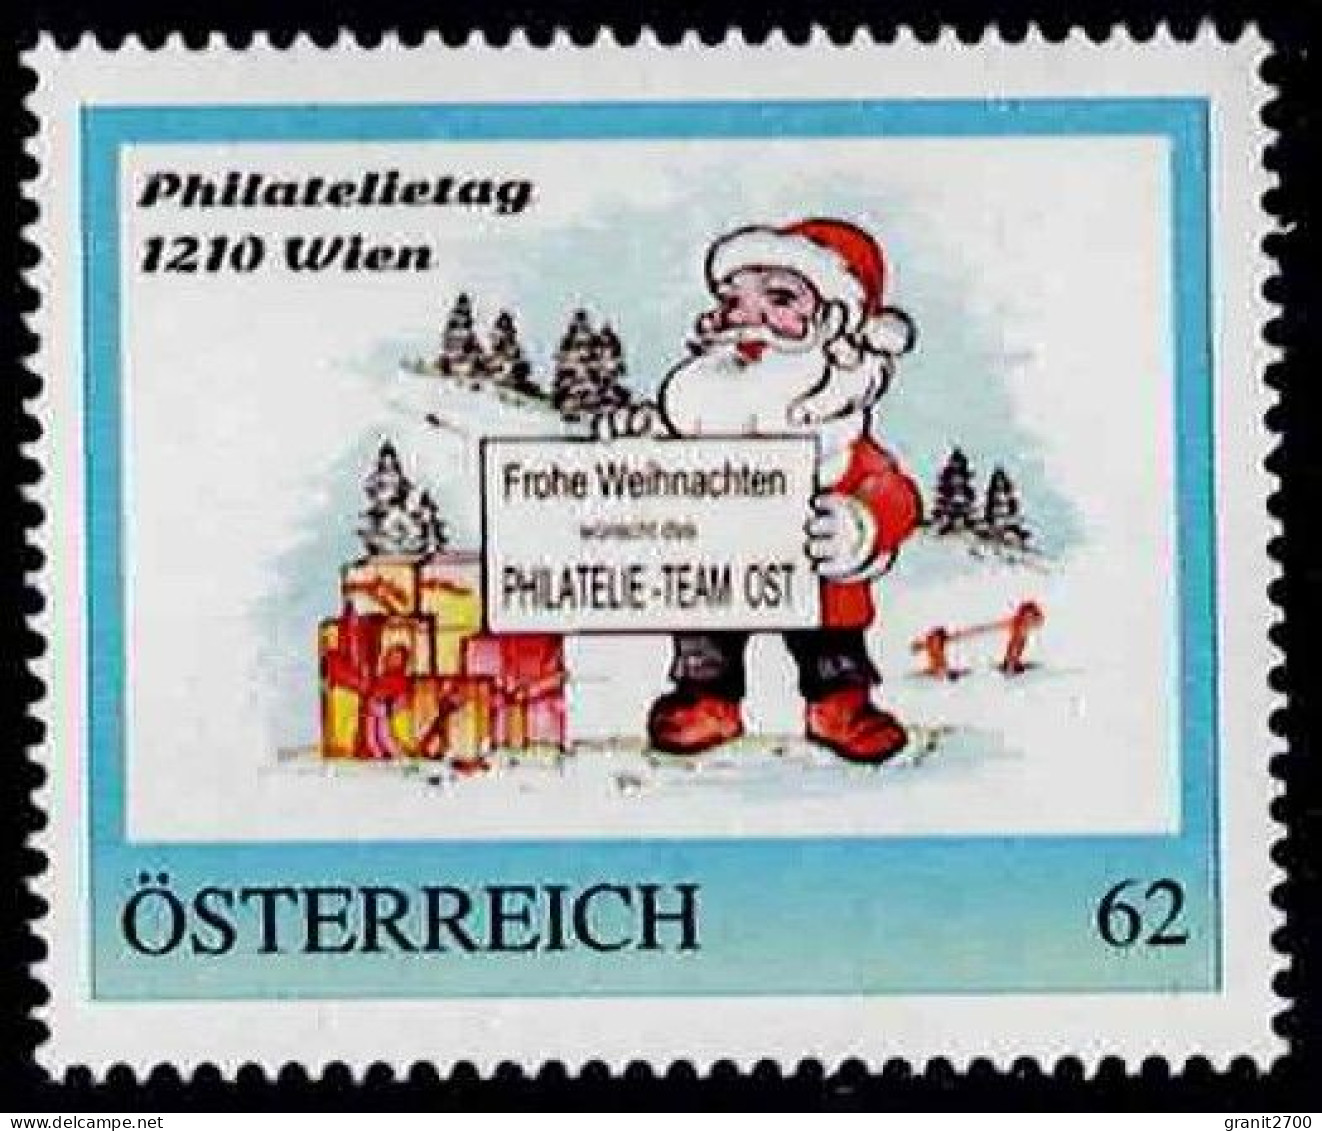 PM Philatelietag 1210 Wien - Frohe Weihnacht  Ex Bogen Nr. 8112488  Vom 18.12.2014  Postfrisch - Personnalized Stamps